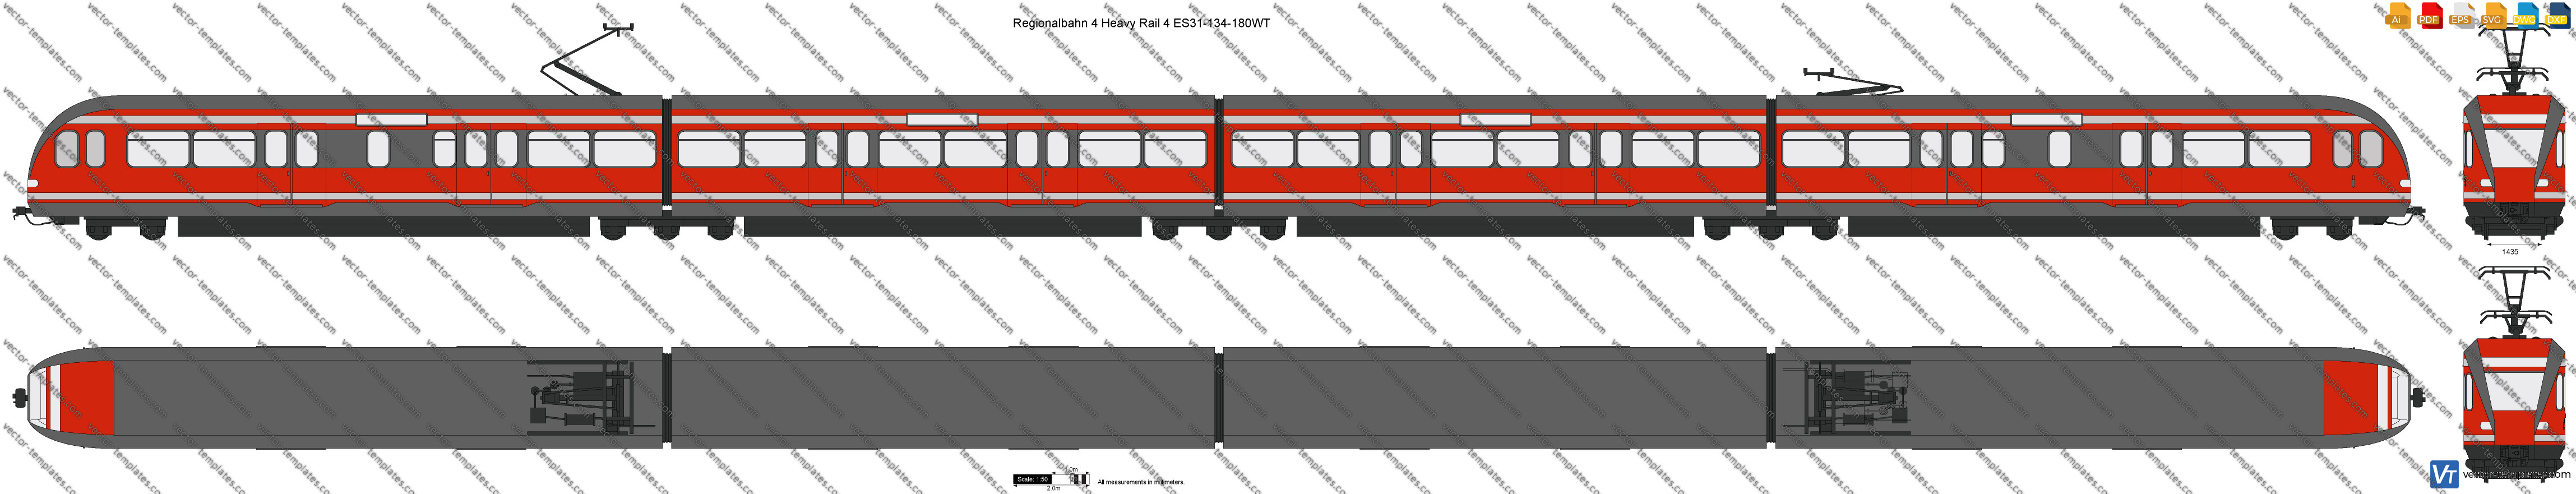 Regionalbahn 4 Heavy Rail 4 ES31-134-180WT 